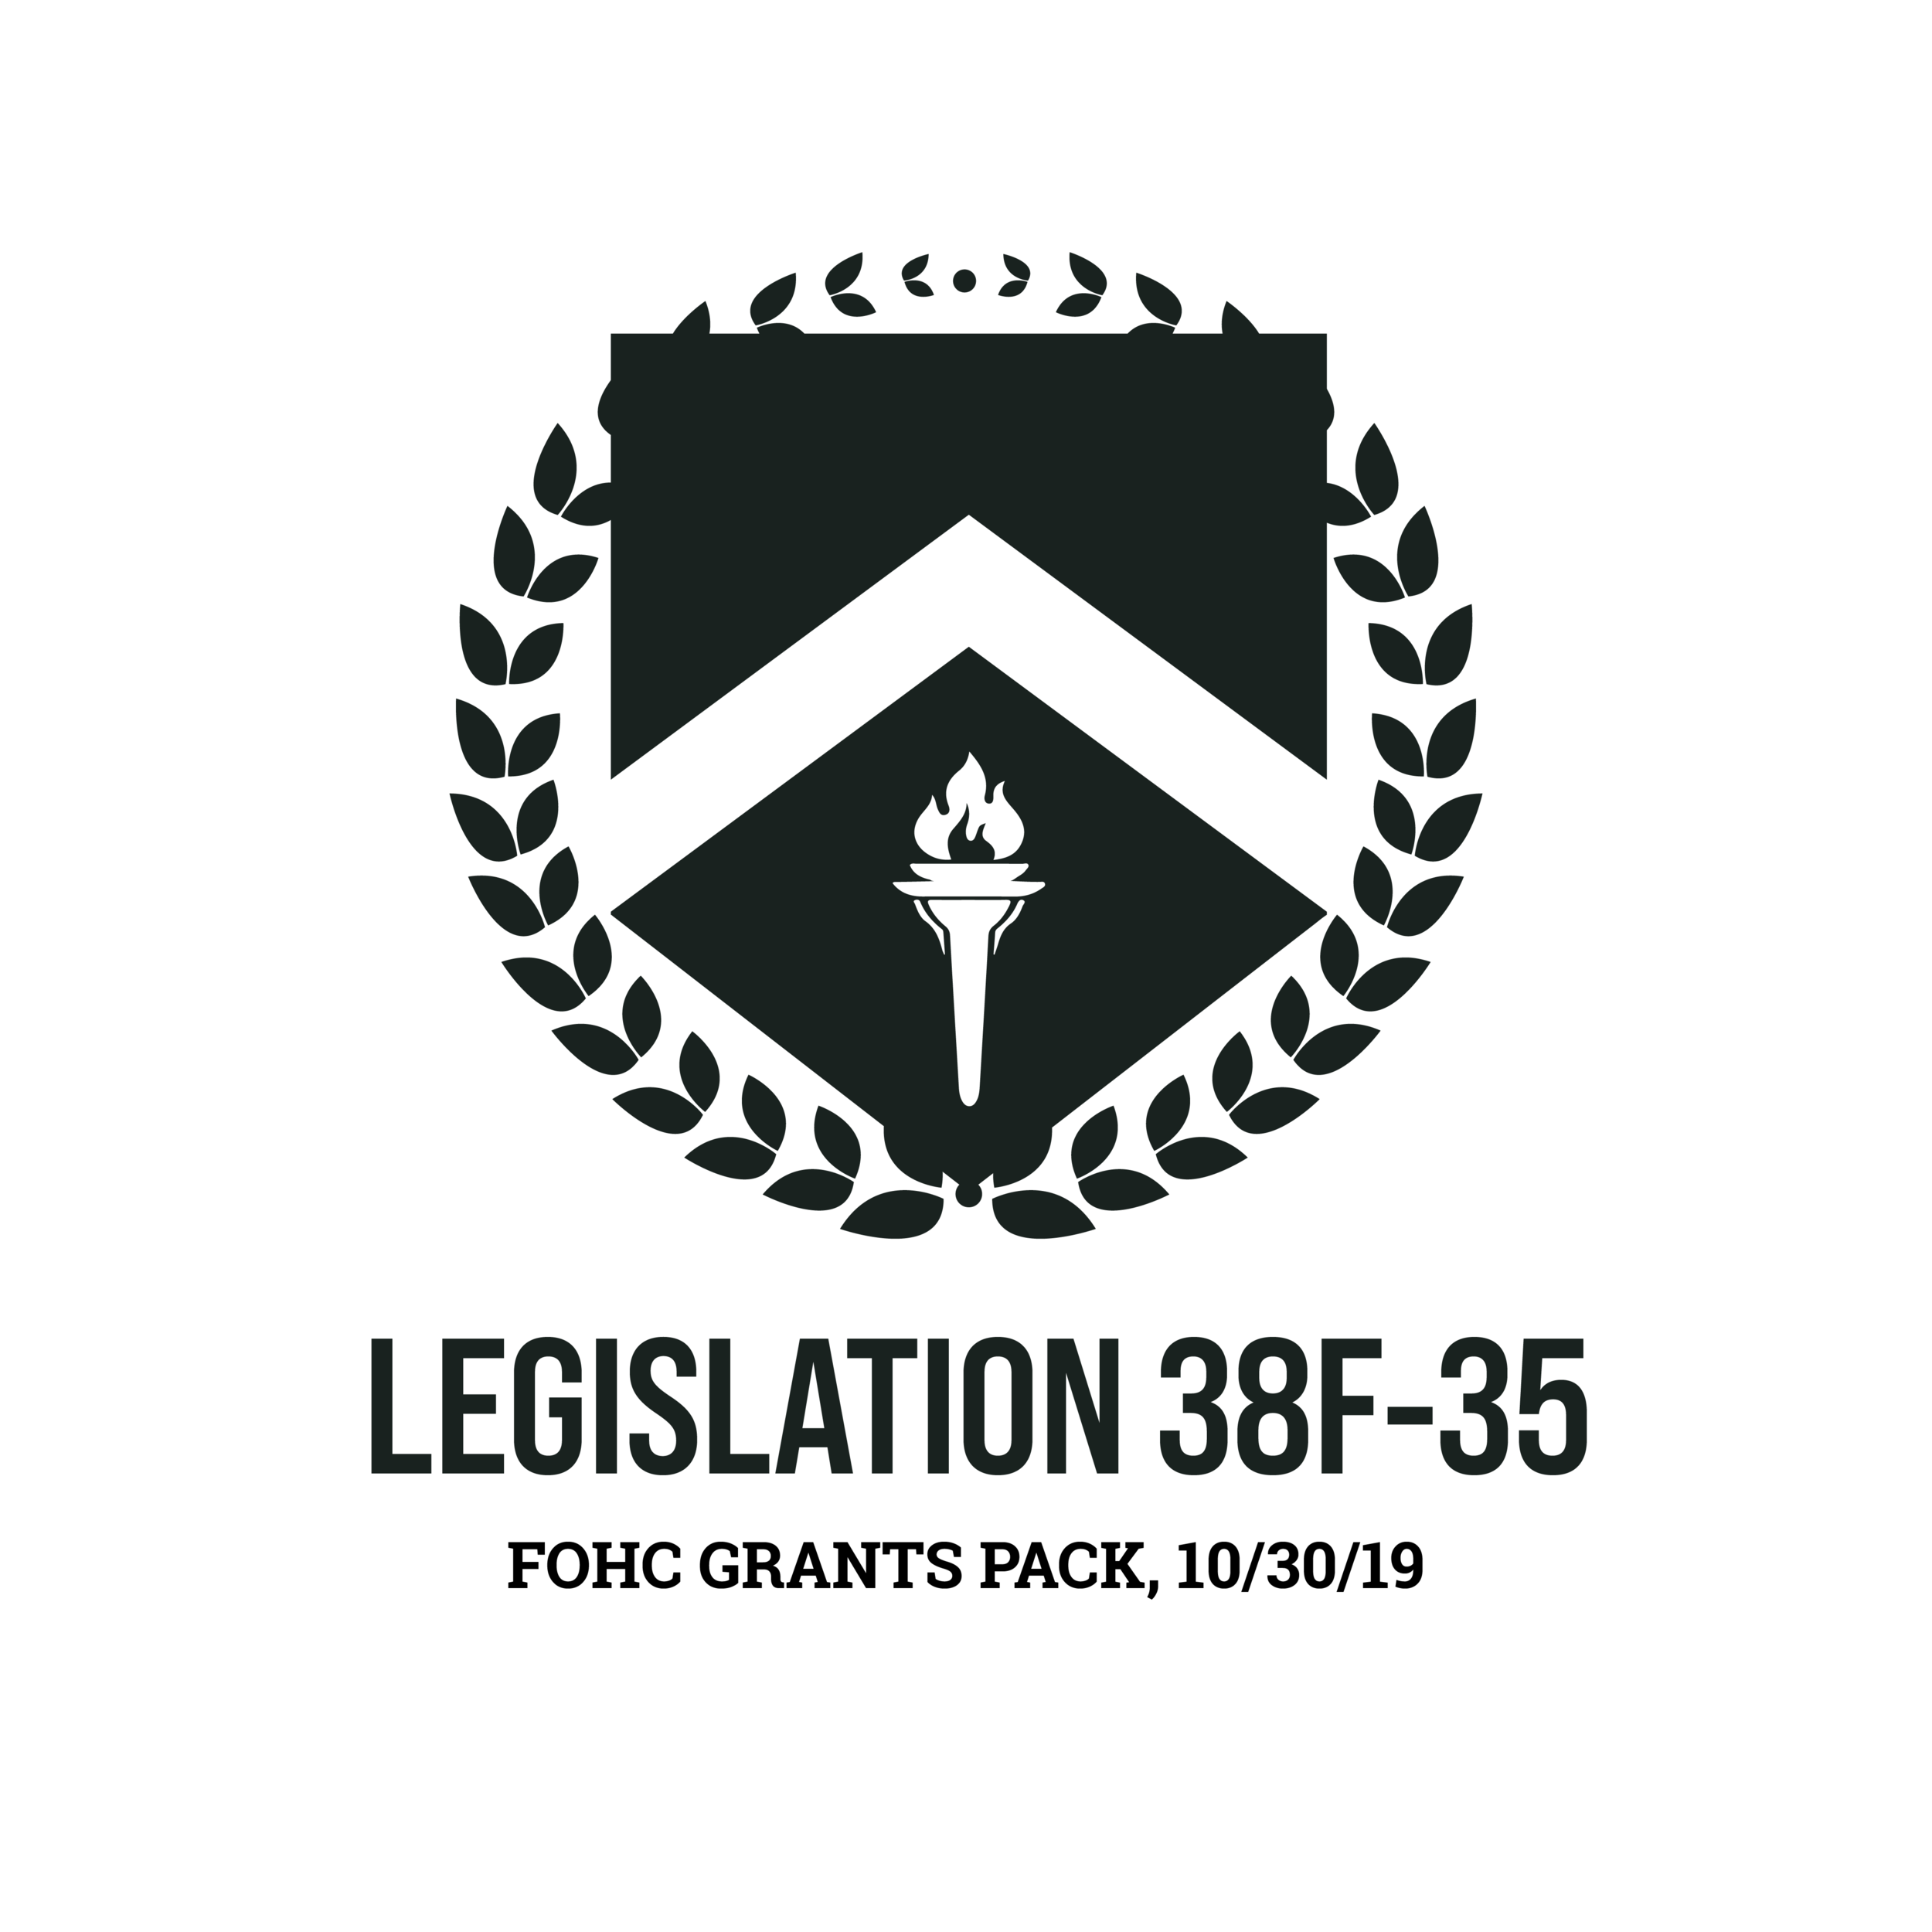 Legislation 38F-35: PASSED